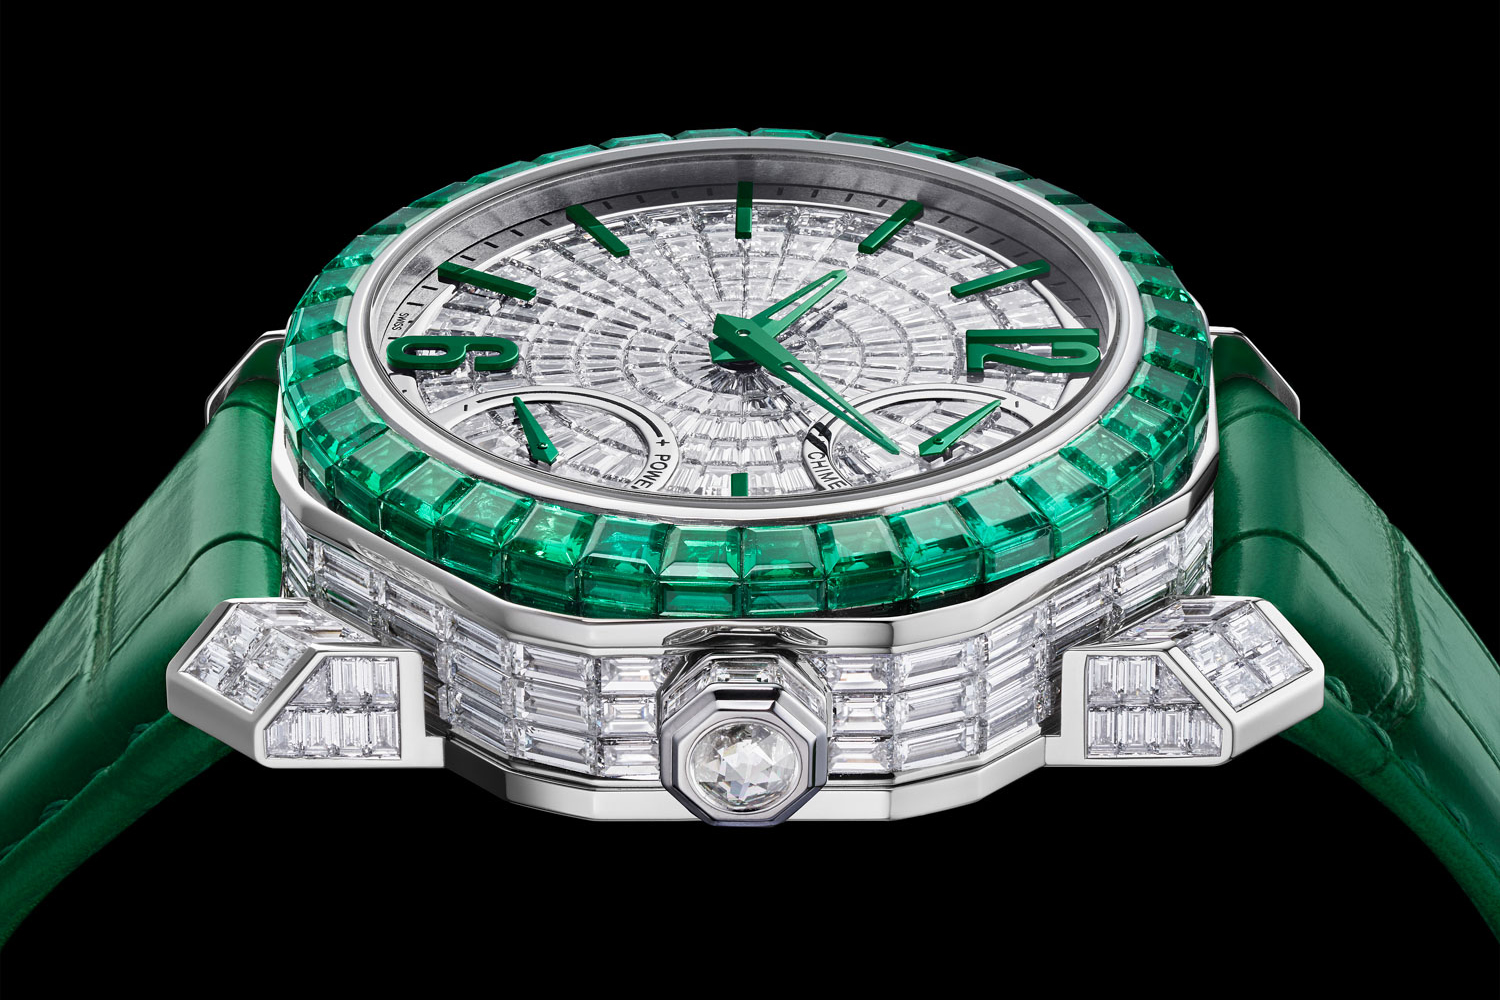 Tuần lễ đồng hồ LVMH: Bulgari chứng tỏ khả năng làm chủ Haute Horlogerie &  Haute Joaillerie với hàng loạt đồng hồ mới